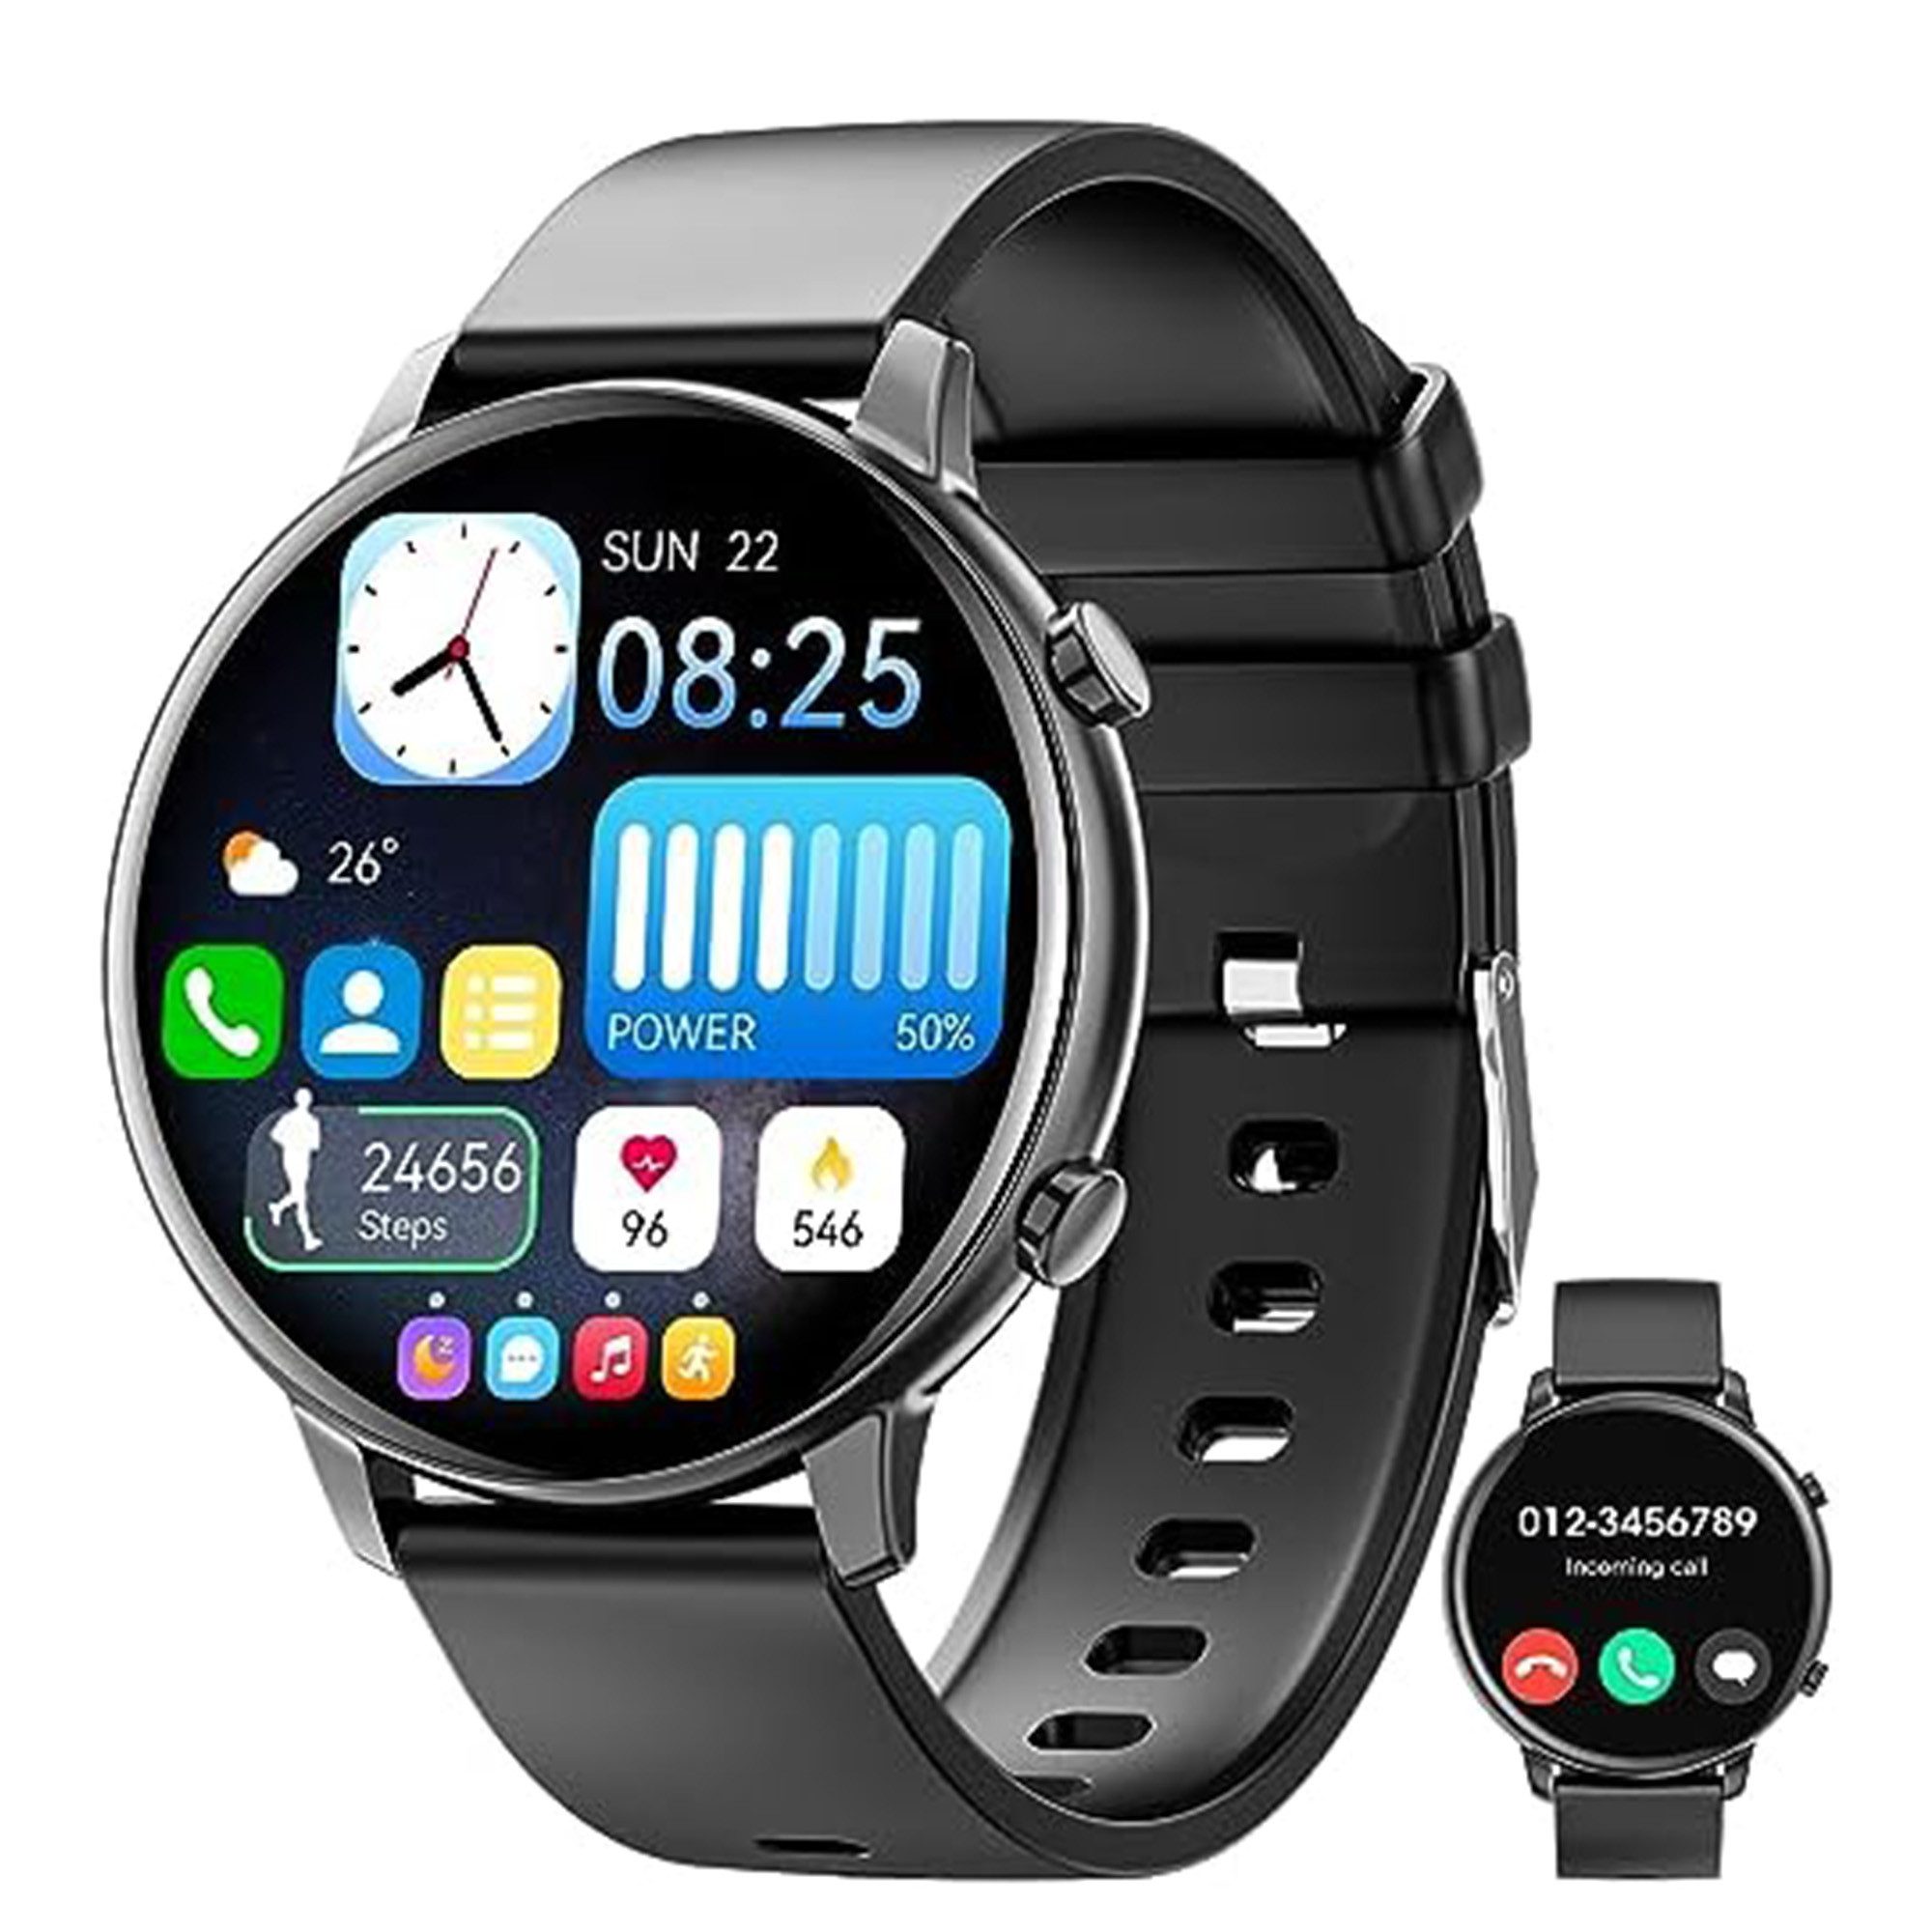 Mingtawn Herren%27s und Damen%27s Fitness Smartwatch (1,40 Zoll, Android/iOS), mit Herzfrequenz, Spo2, Schlaf, über 100 Sportmodi, Aktivitätstracker